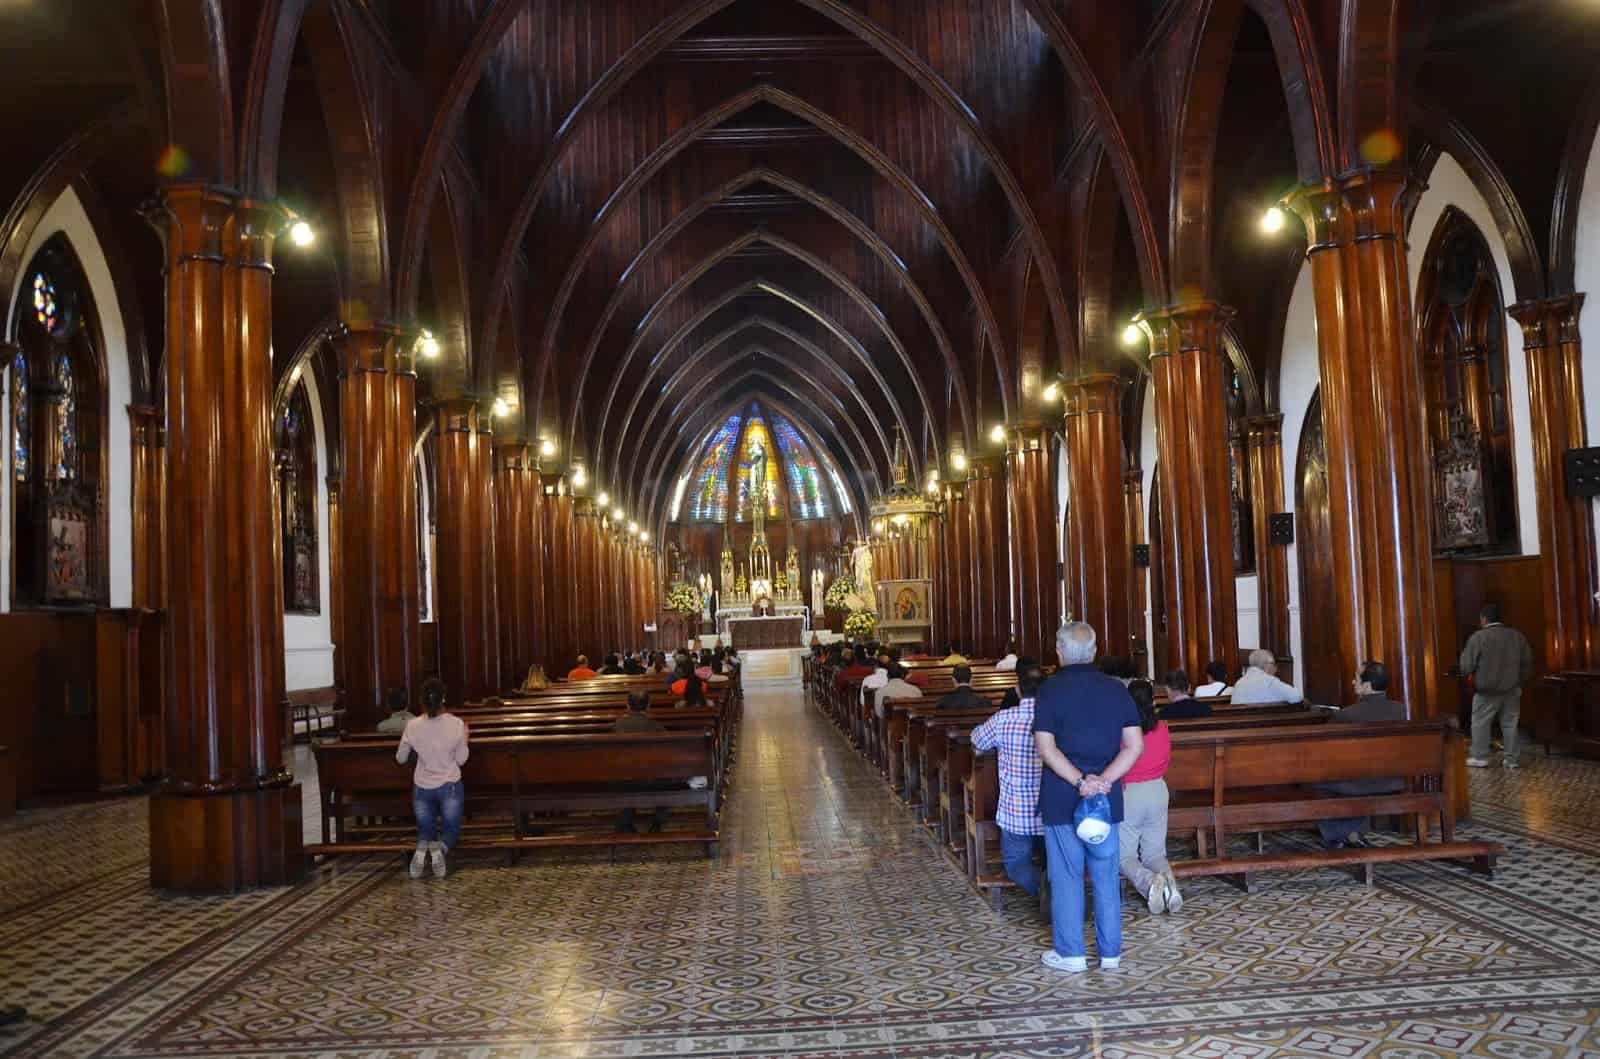 Iglesia de la Inmaculada Concepción in Manizales, Caldas, Colombia